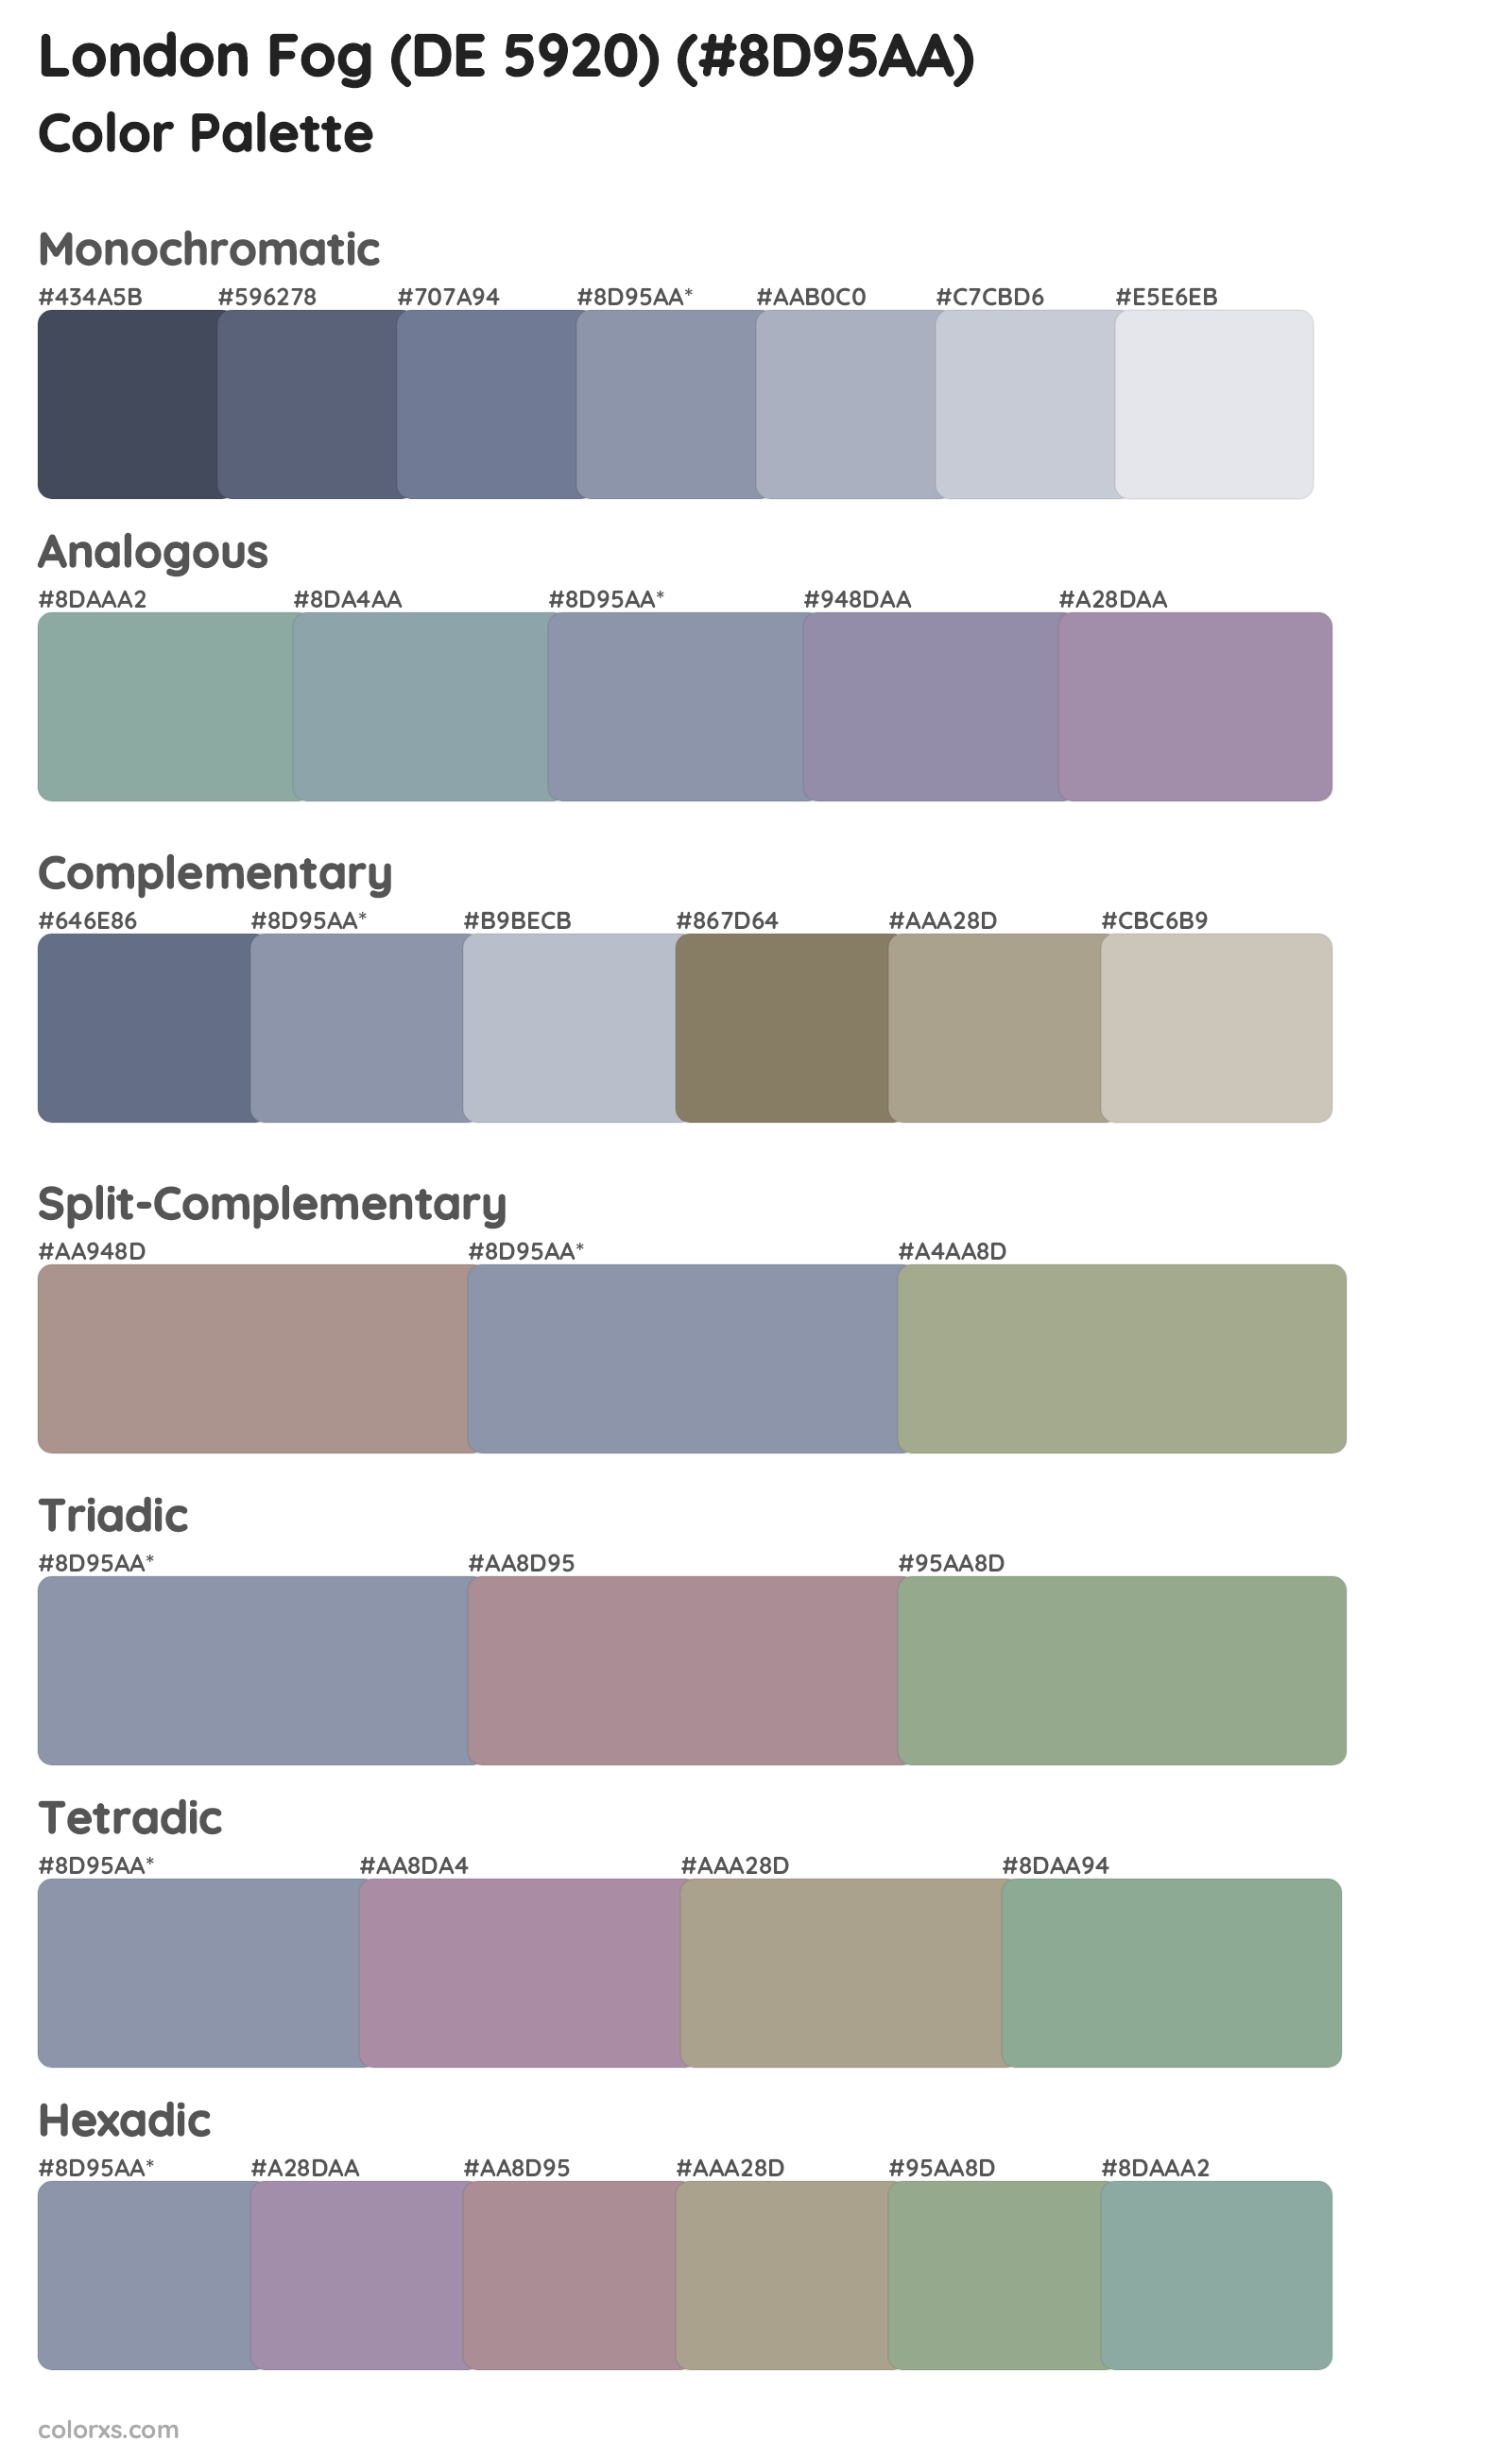 London Fog (DE 5920) Color Scheme Palettes